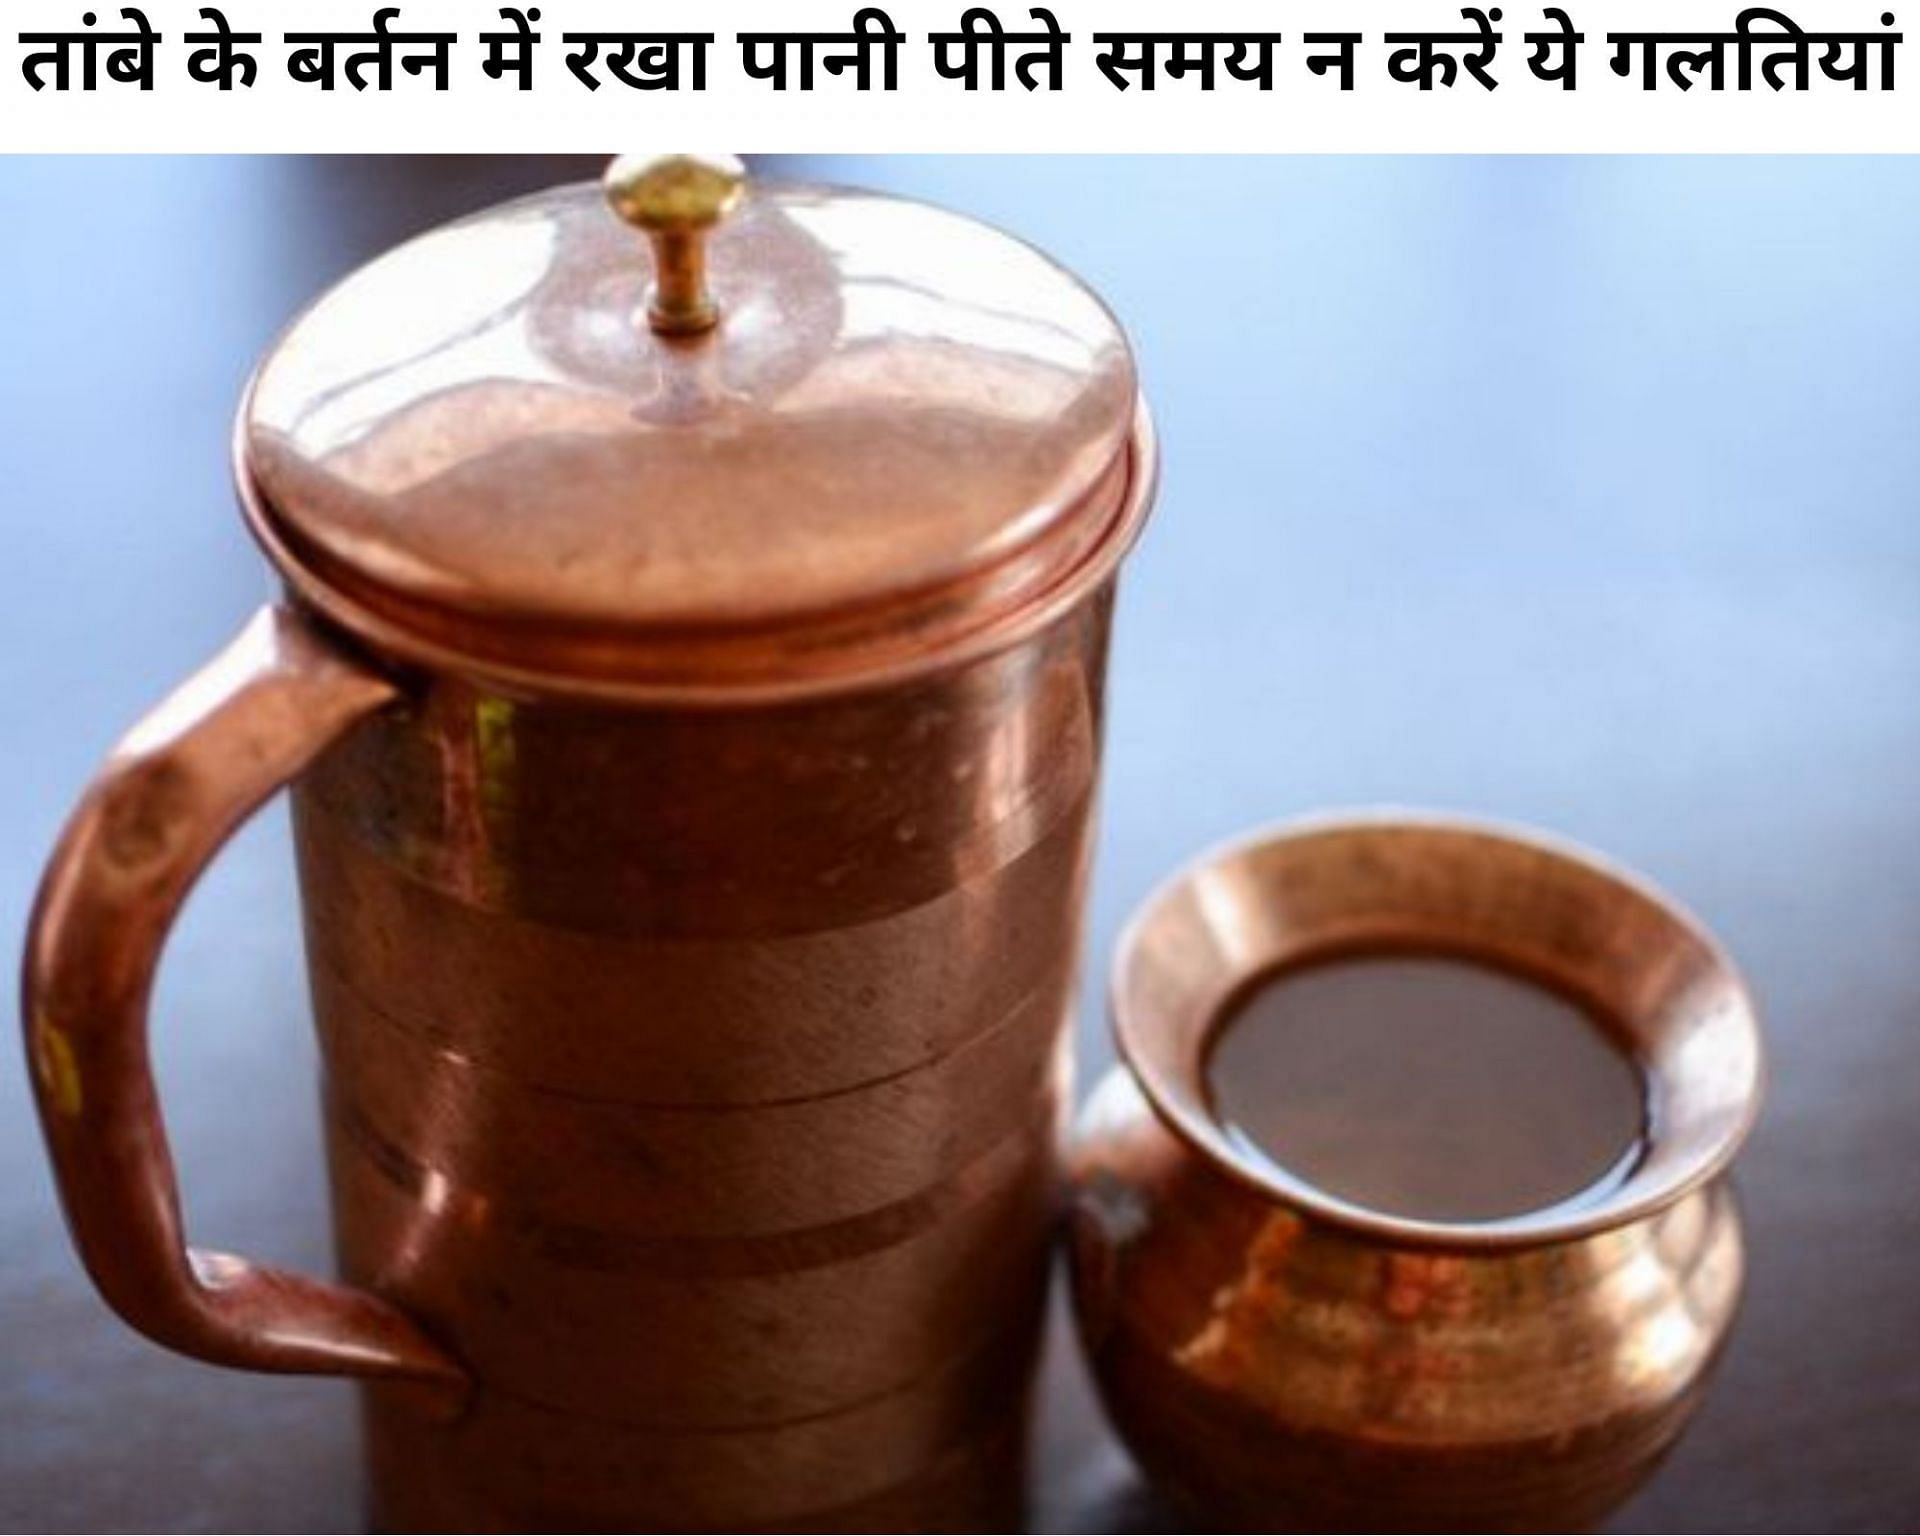 तांबे के बर्तन में रखा पानी पीते समय न करें ये गलतियां (फोटो - sportskeeda hindi)